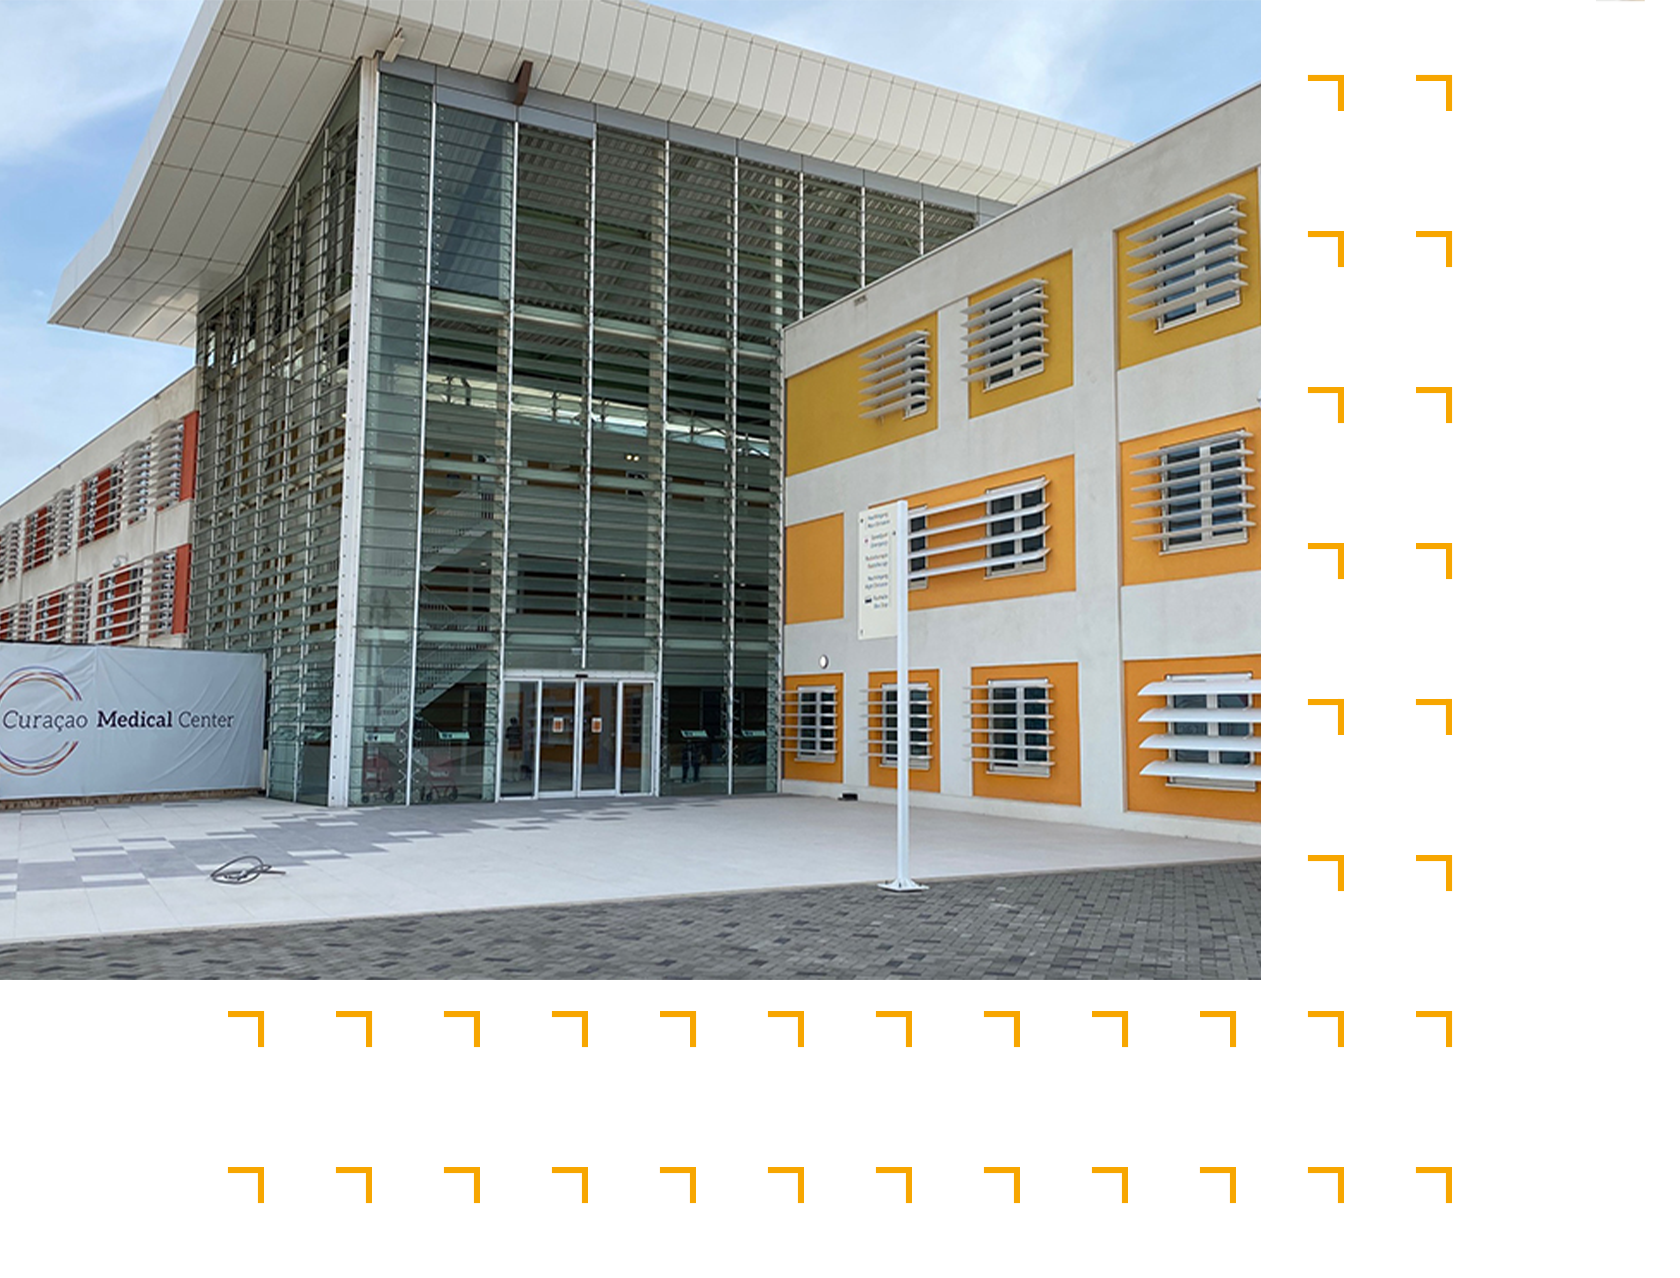 Curacao medical center